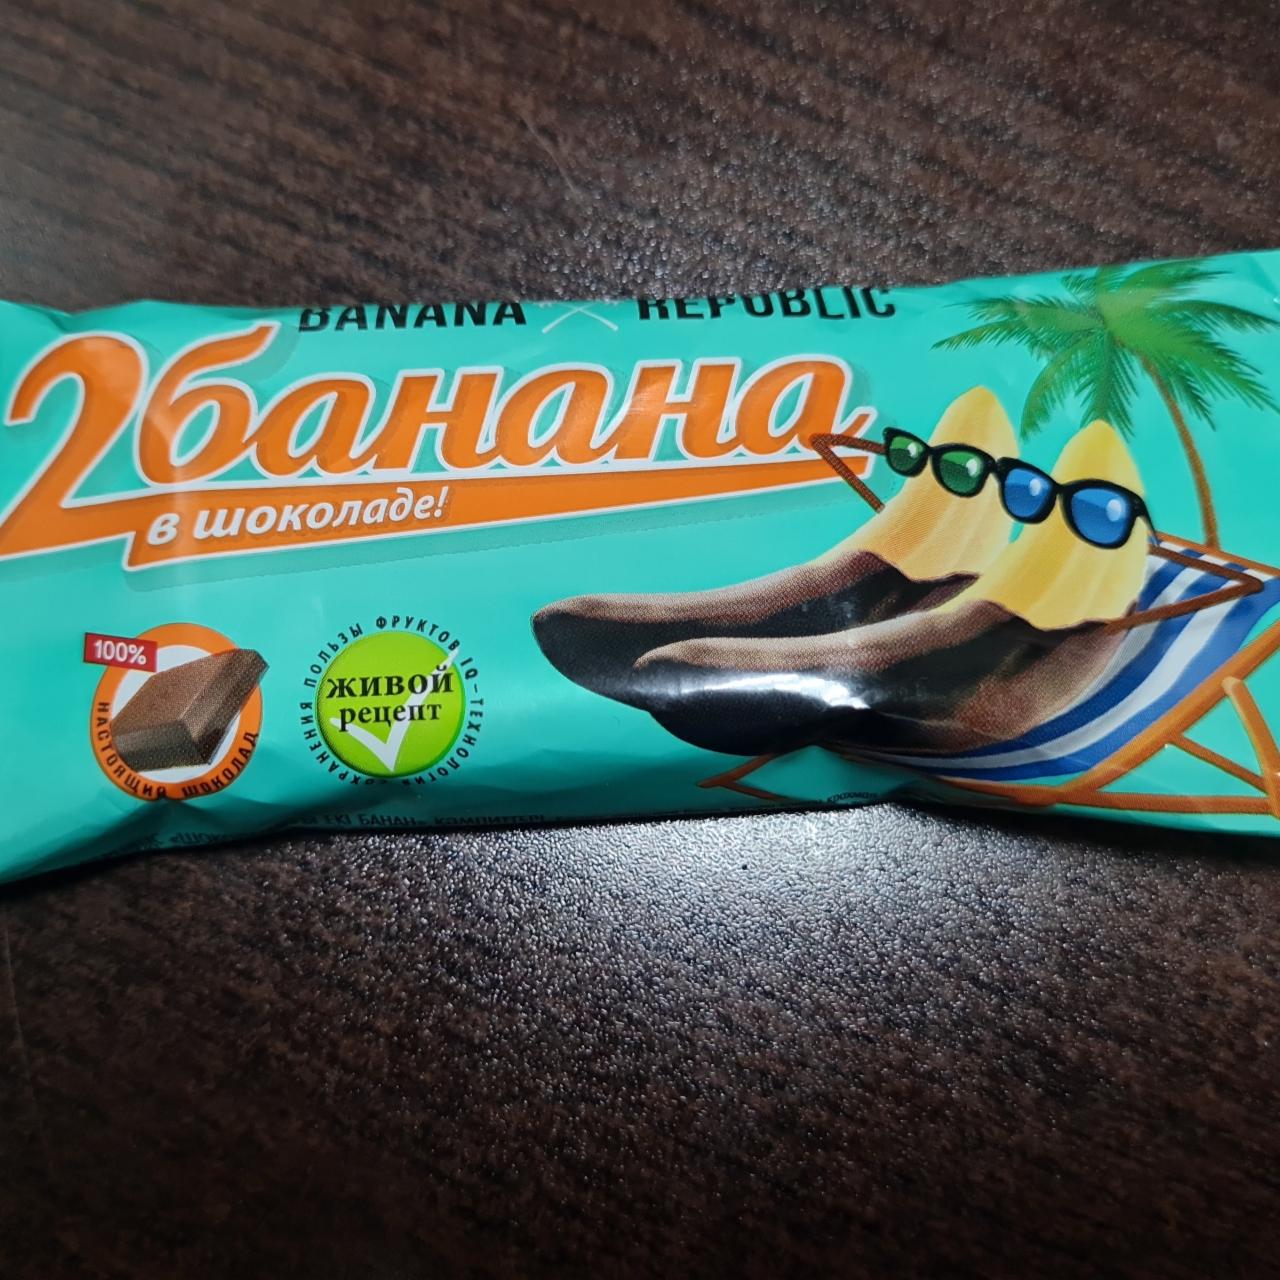 Фото - 2 банана в шоколаде Banana Republic